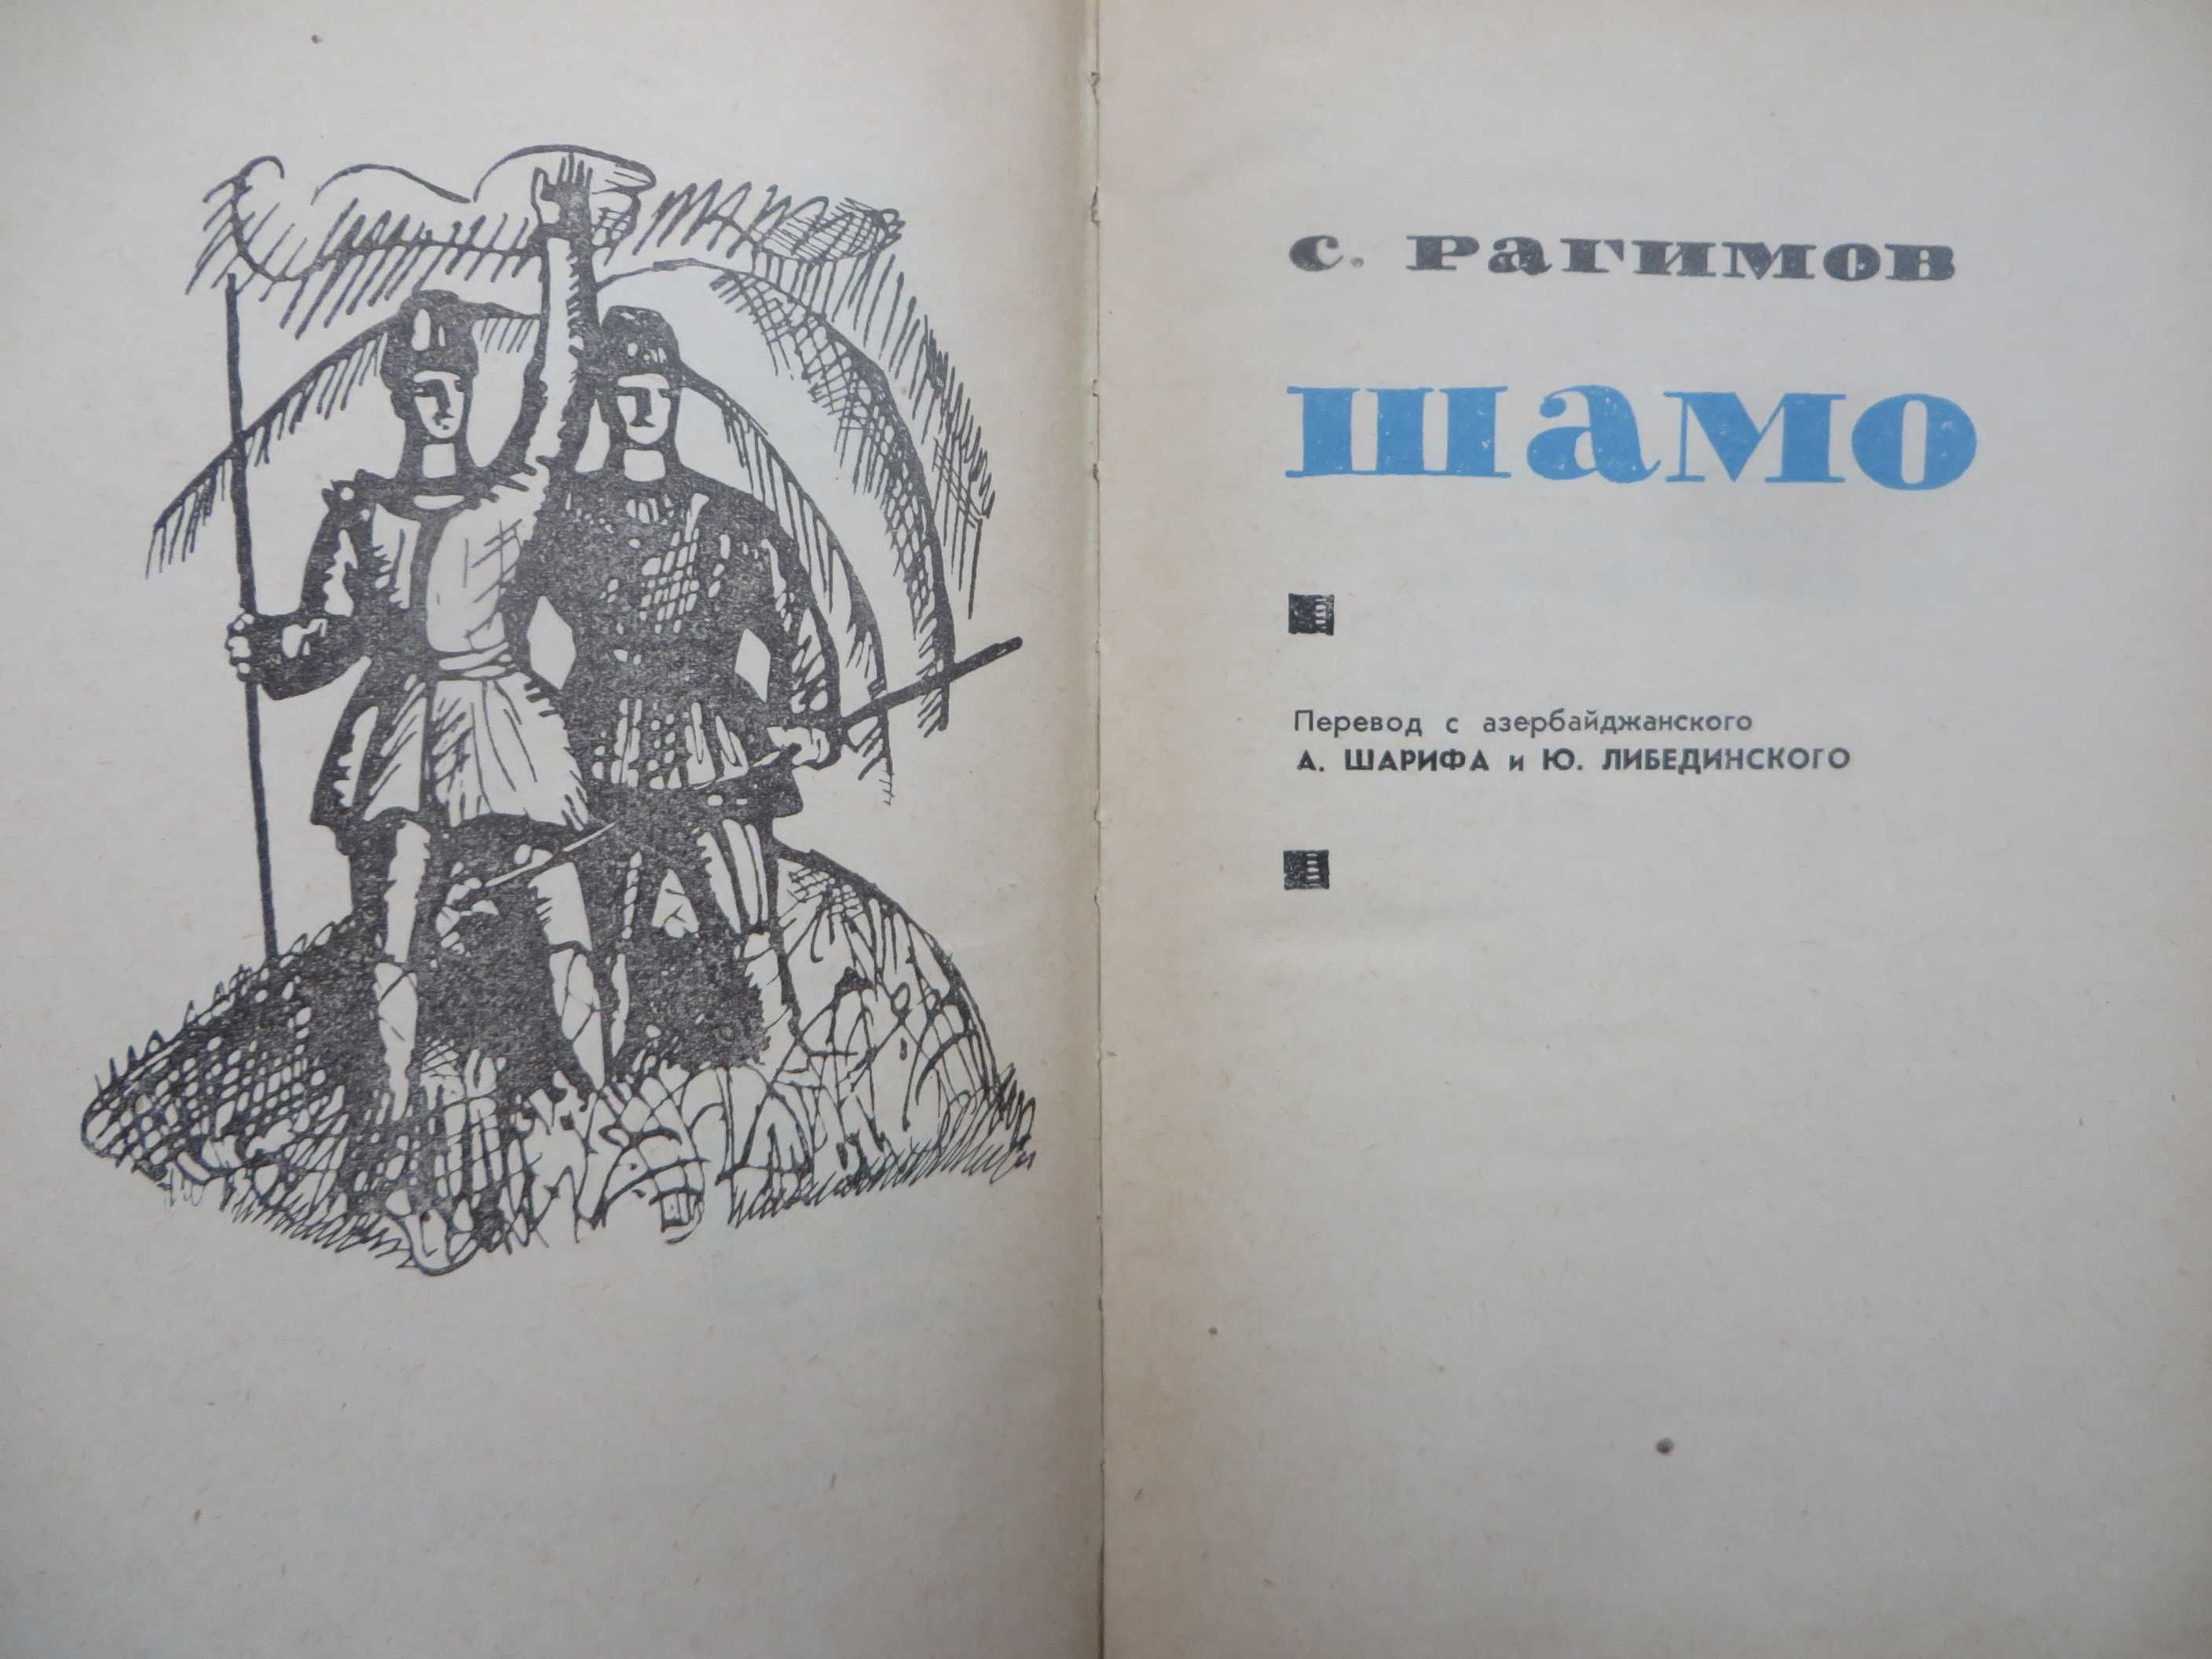 книга Рагимов Шамо Библиотека исторических романов народов ссср